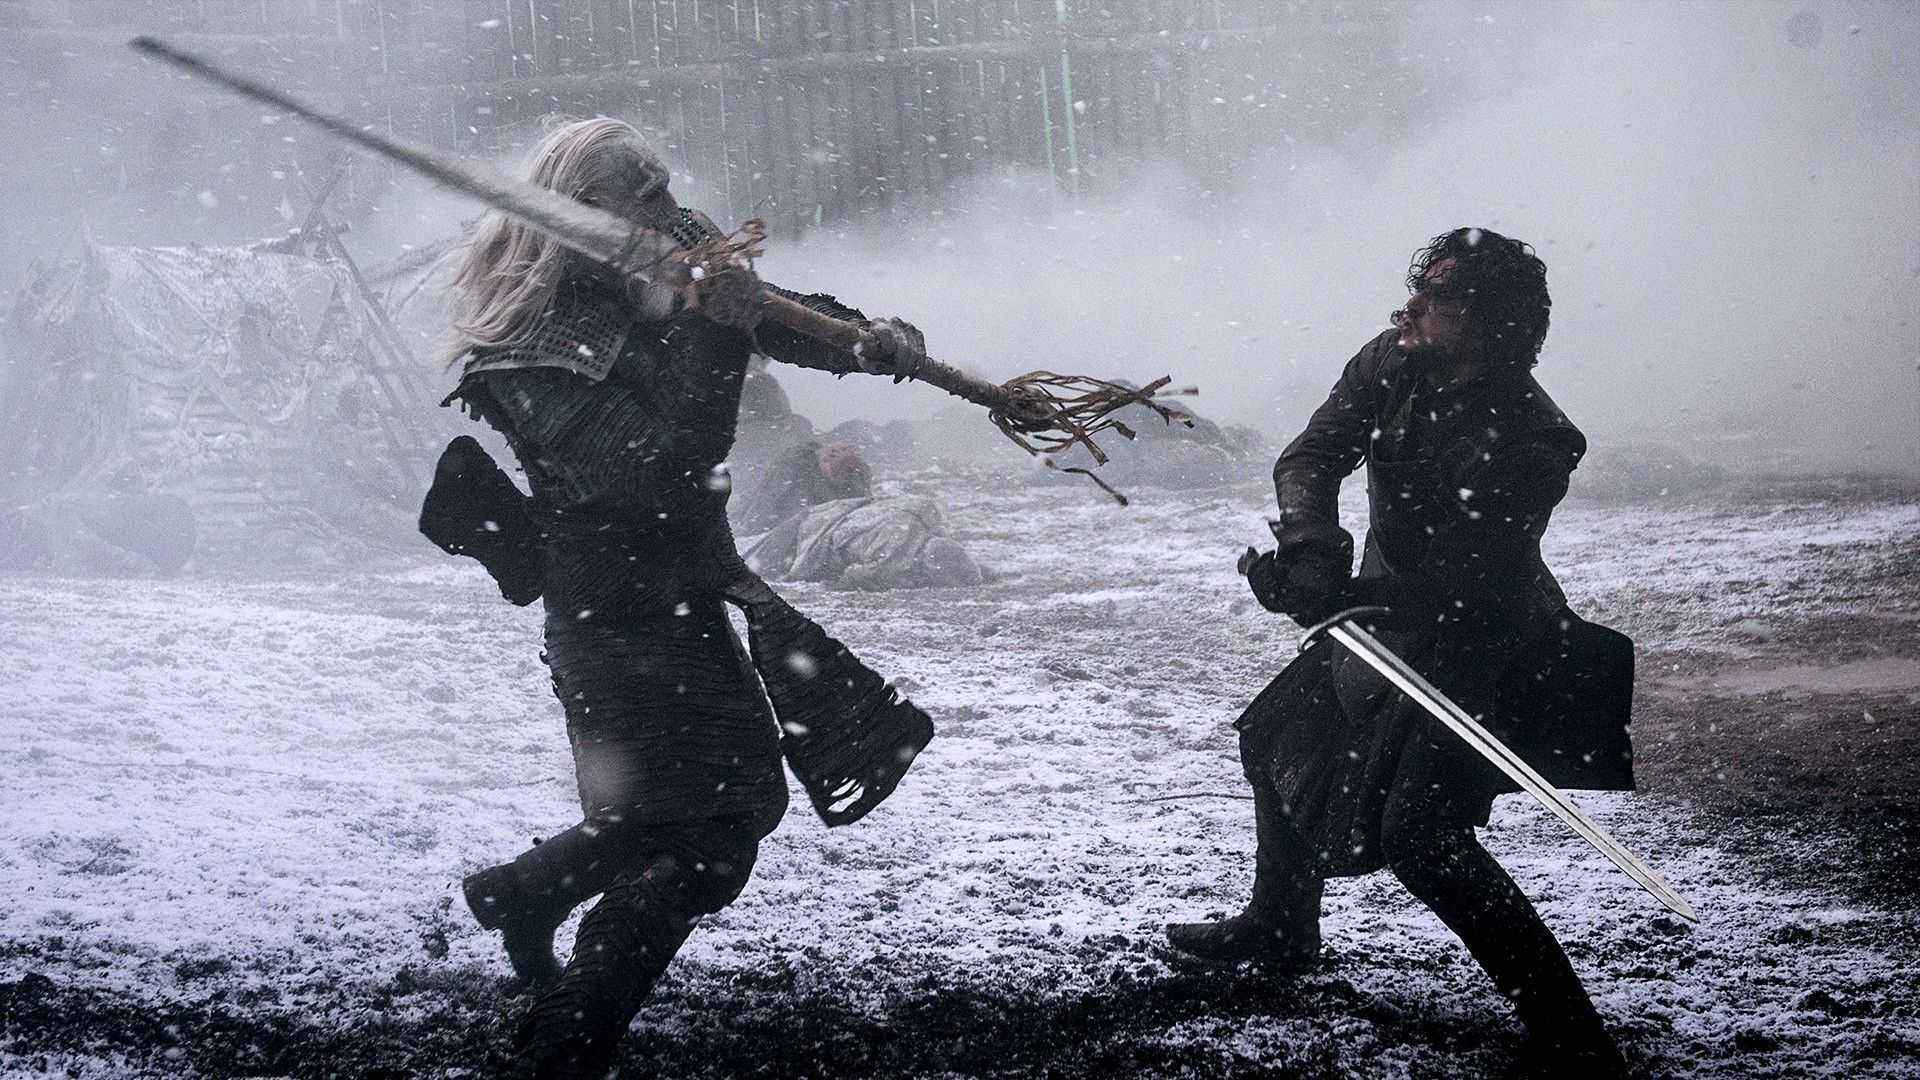 Jon Snow Battle Of The Bastards Wallpapers